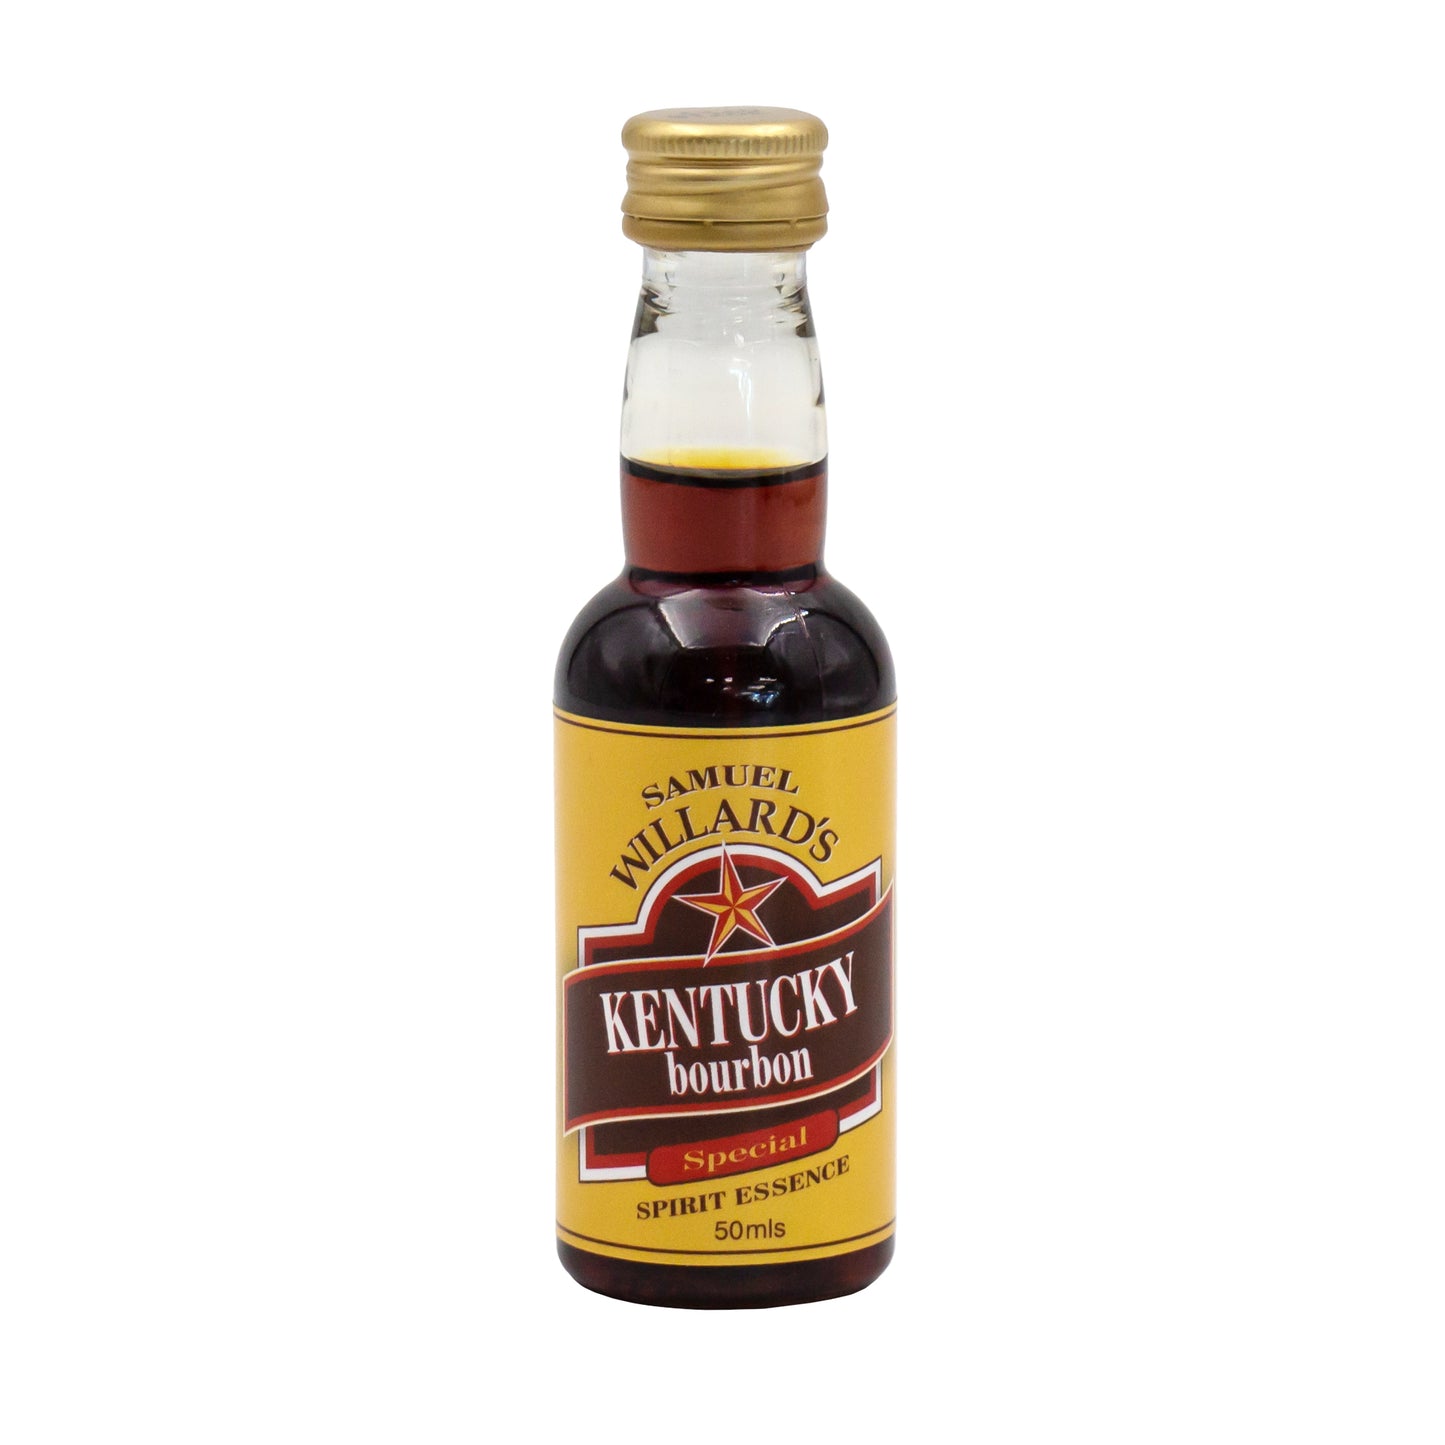 50ml bottle of samuel willards gold star kentucky bourbon essence